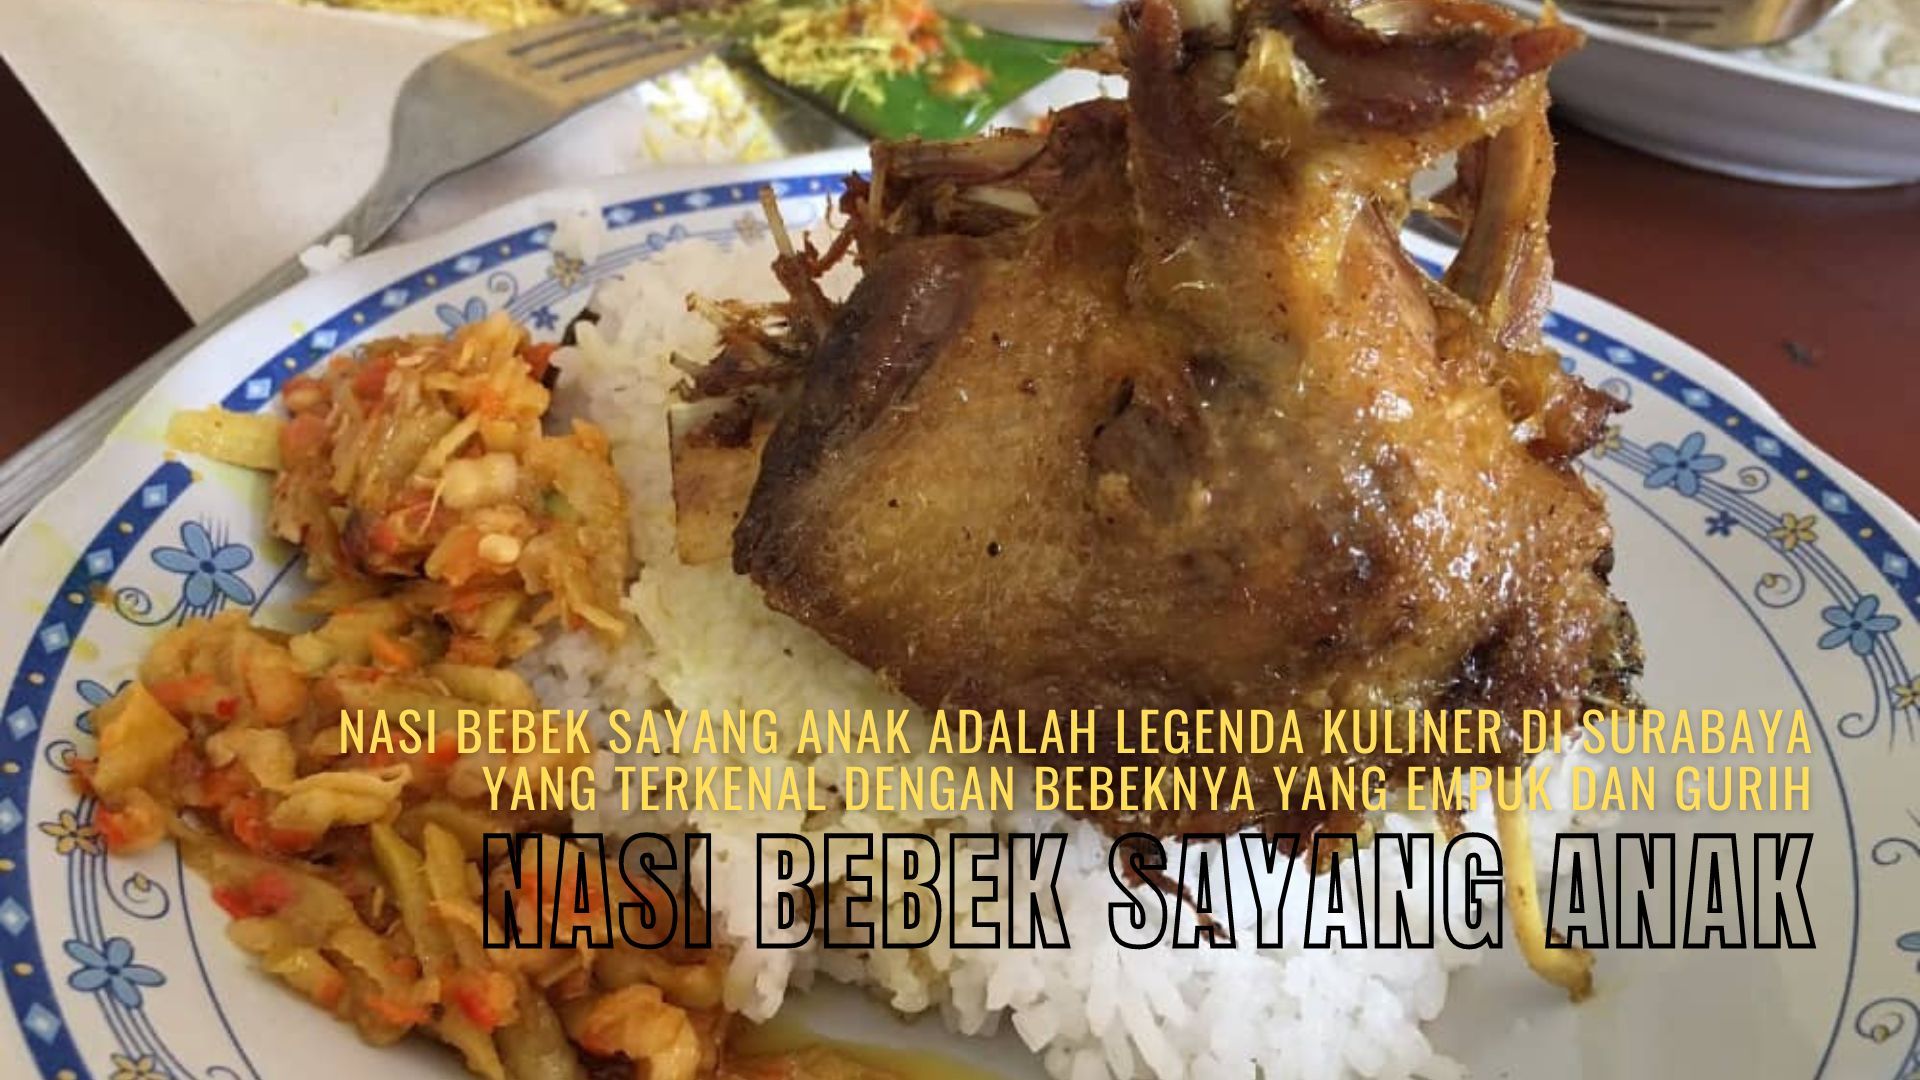 Nasi Bebek Sayang Anak adalah legenda kuliner di Surabaya yang terkenal dengan bebeknya yang empuk dan gurih